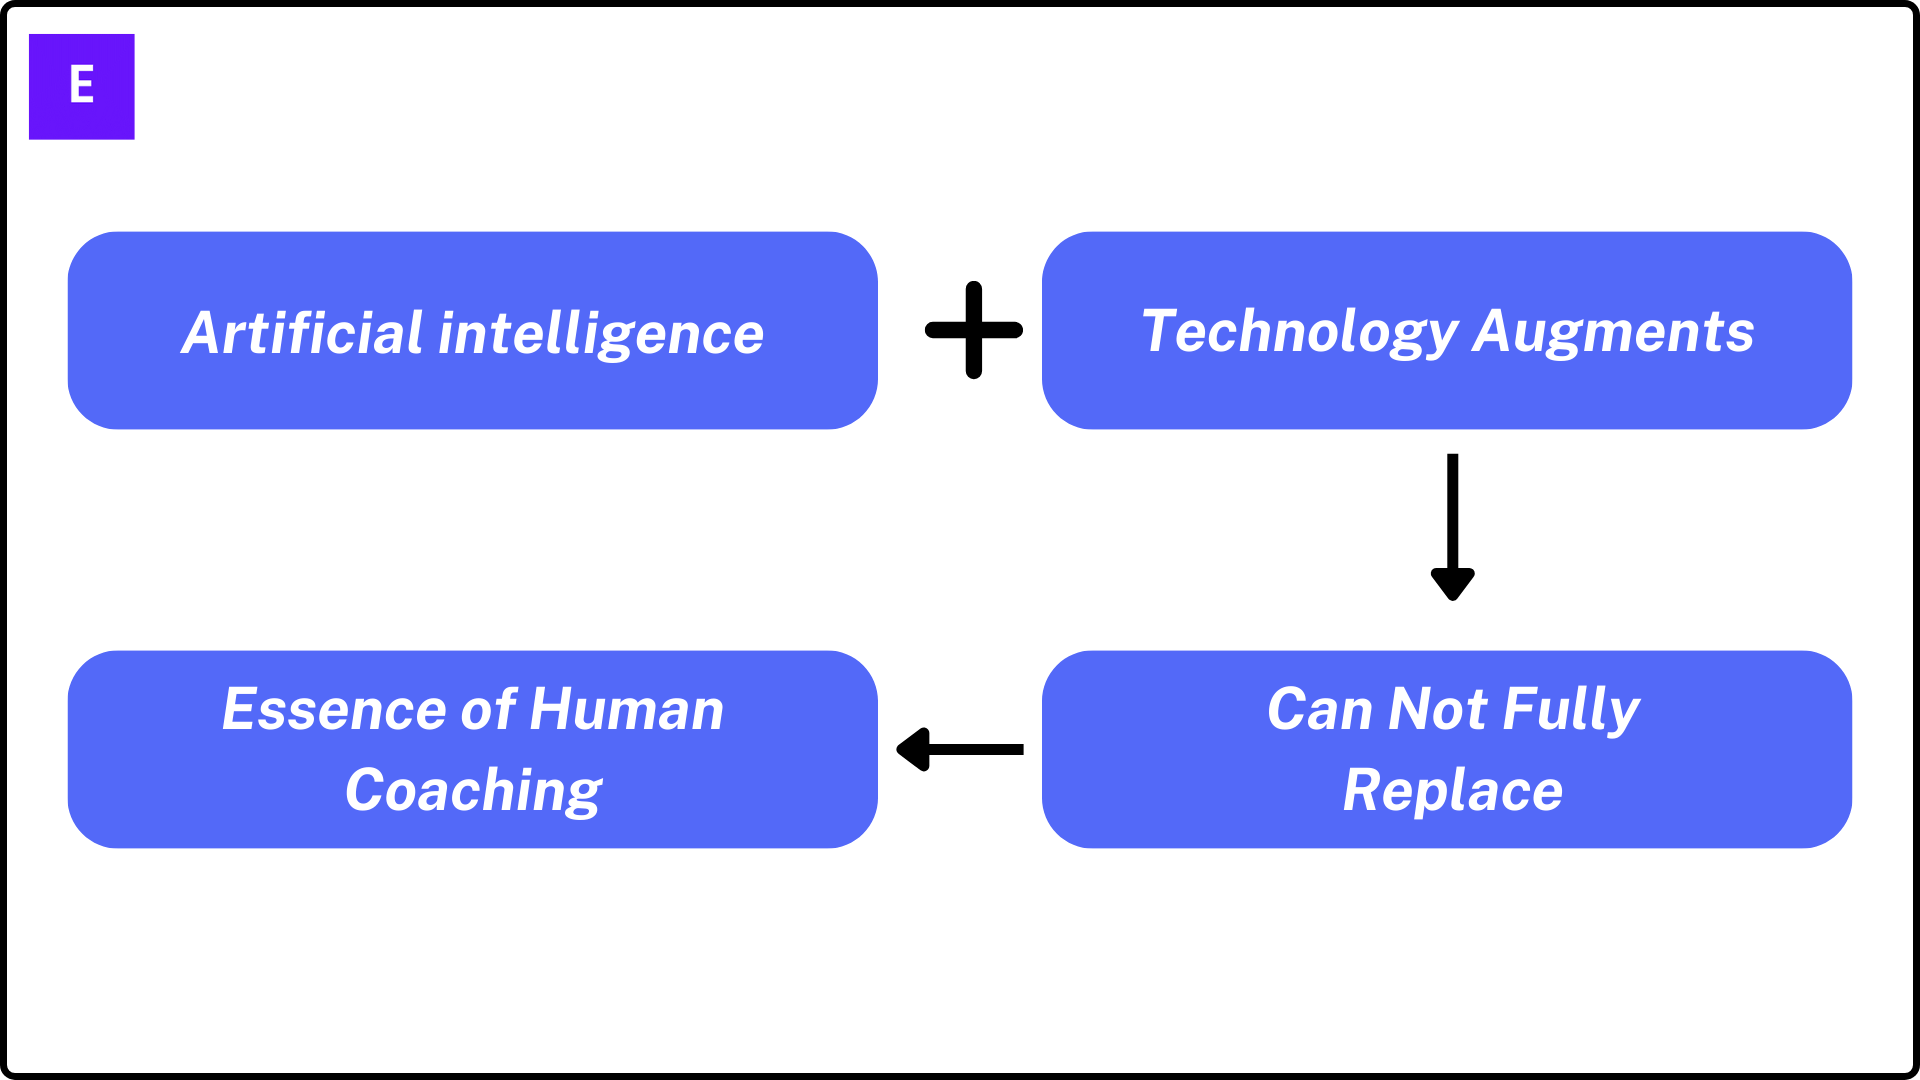 Human coaching